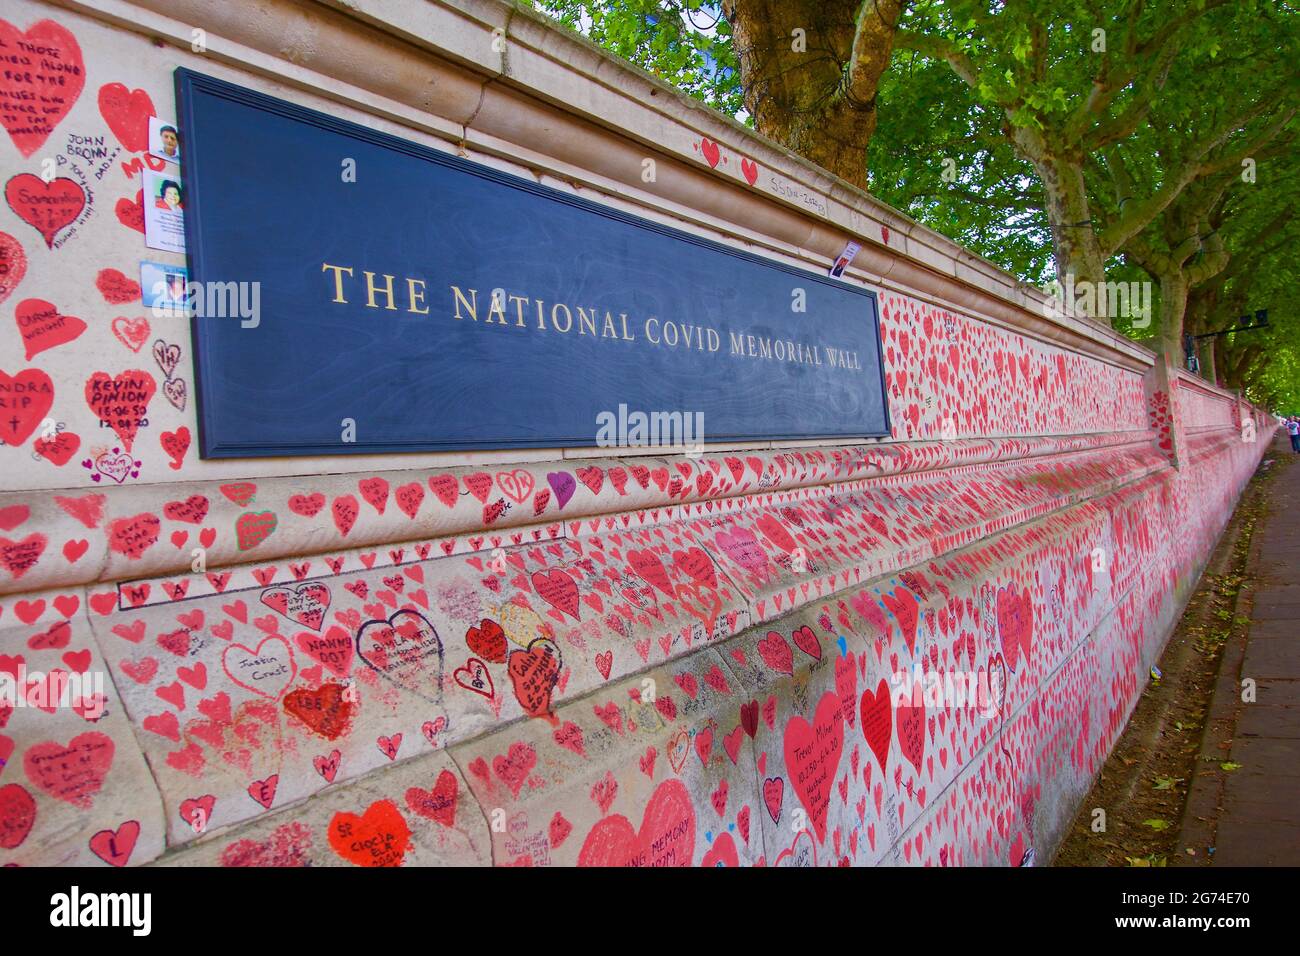 Londra, Inghilterra, Regno Unito 24.06.2021_The National Covid Memorial Wall in South Bank, Lambeth in memoria delle vittime del Covid-19 Foto Stock